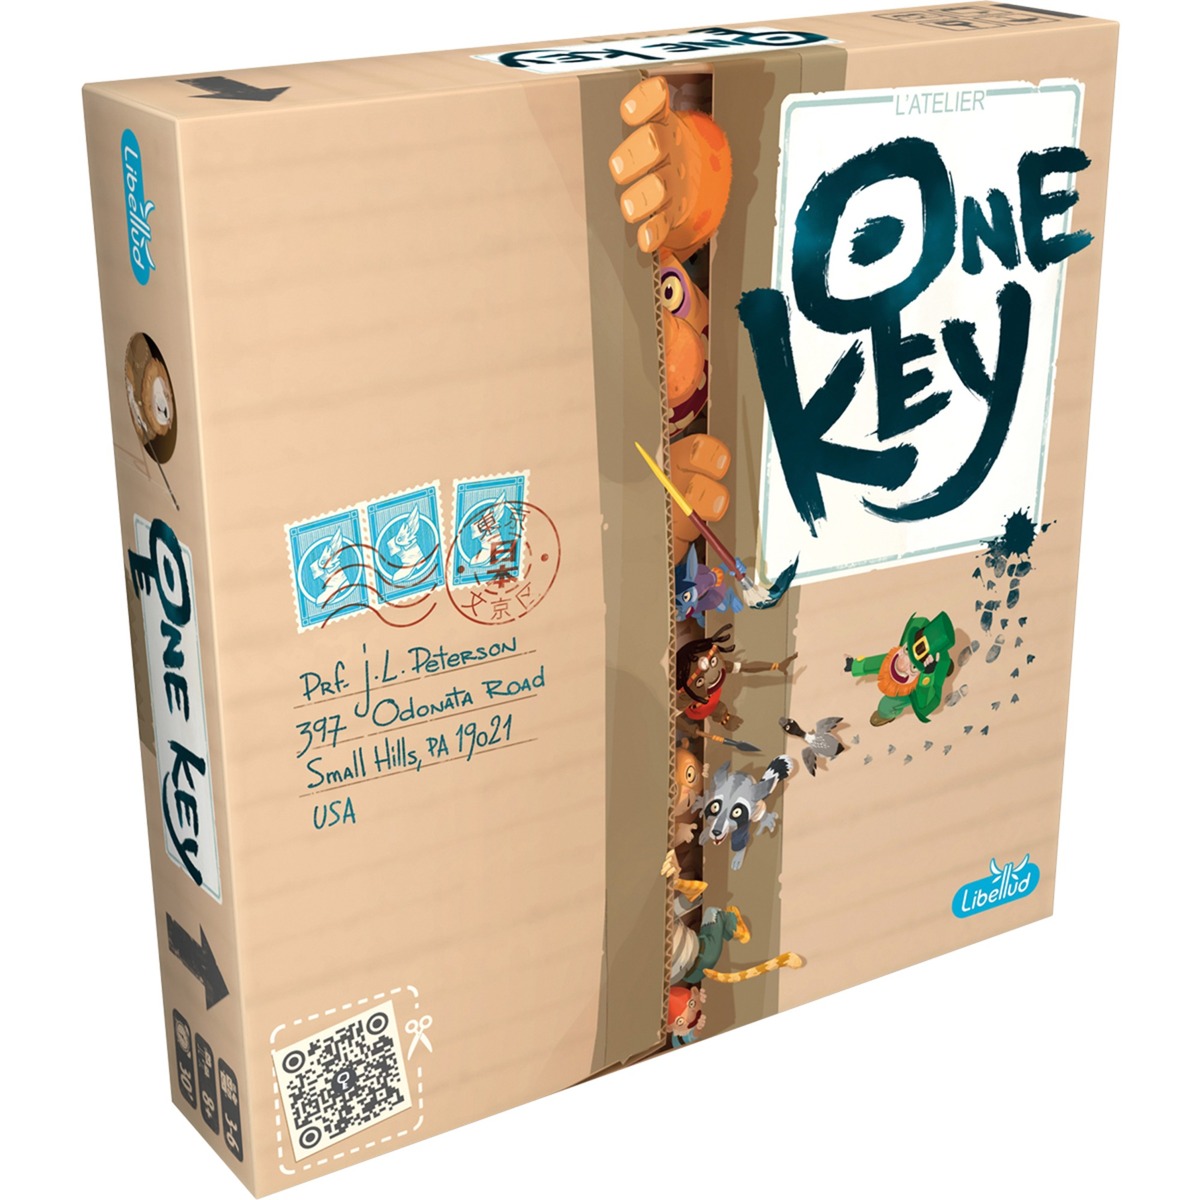 Image of Alternate - One Key, Kartenspiel online einkaufen bei Alternate